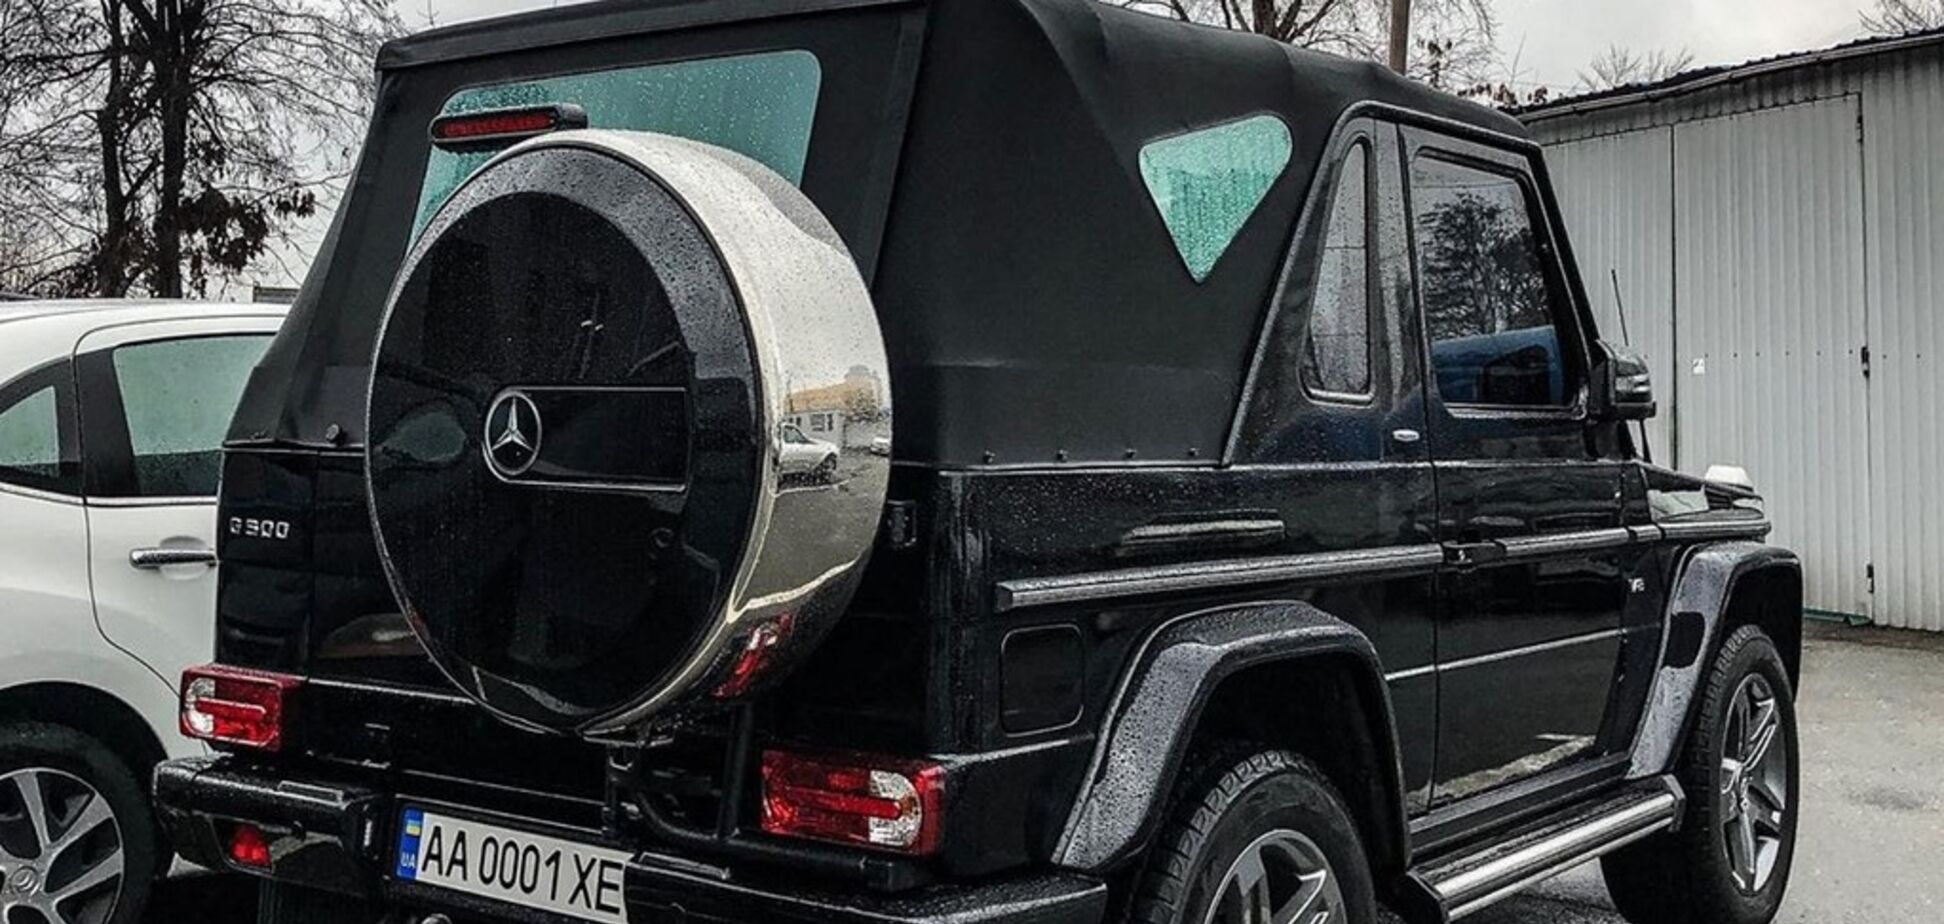 Как у Януковича: в Киеве засняли редкий Mercedes за 400 000 евро